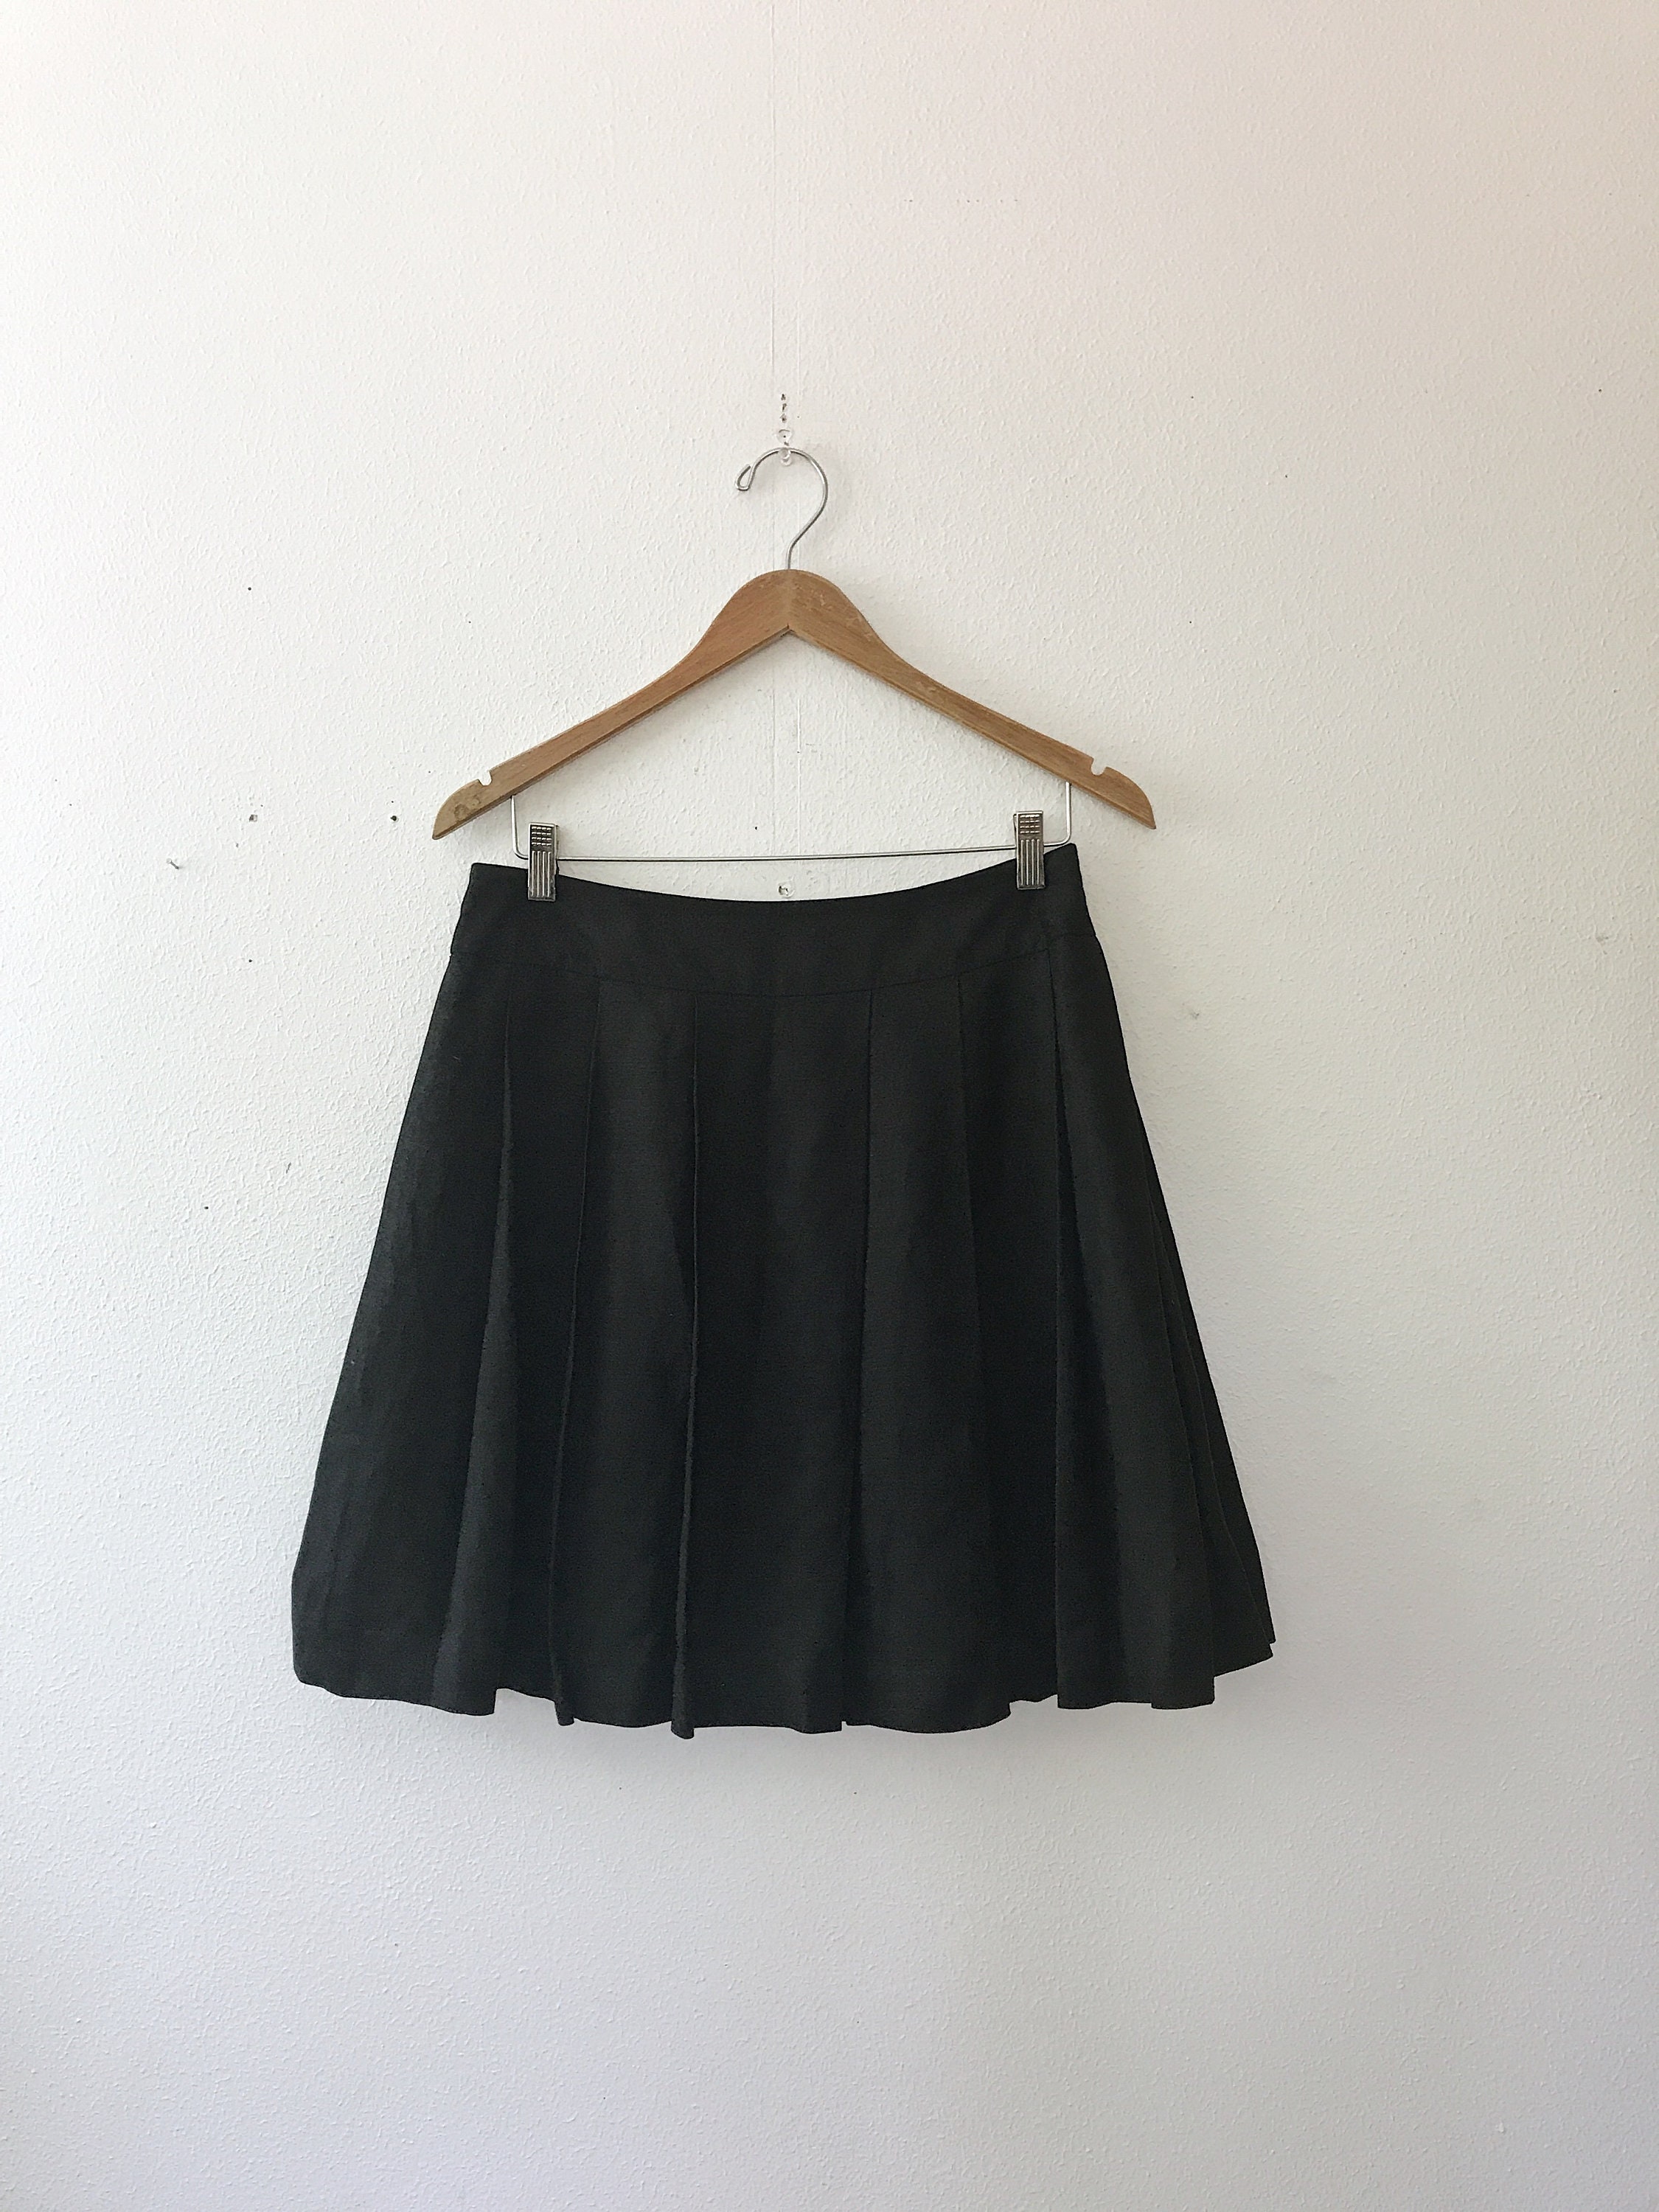 linen skirt / black linen skirt / pleated short skirt